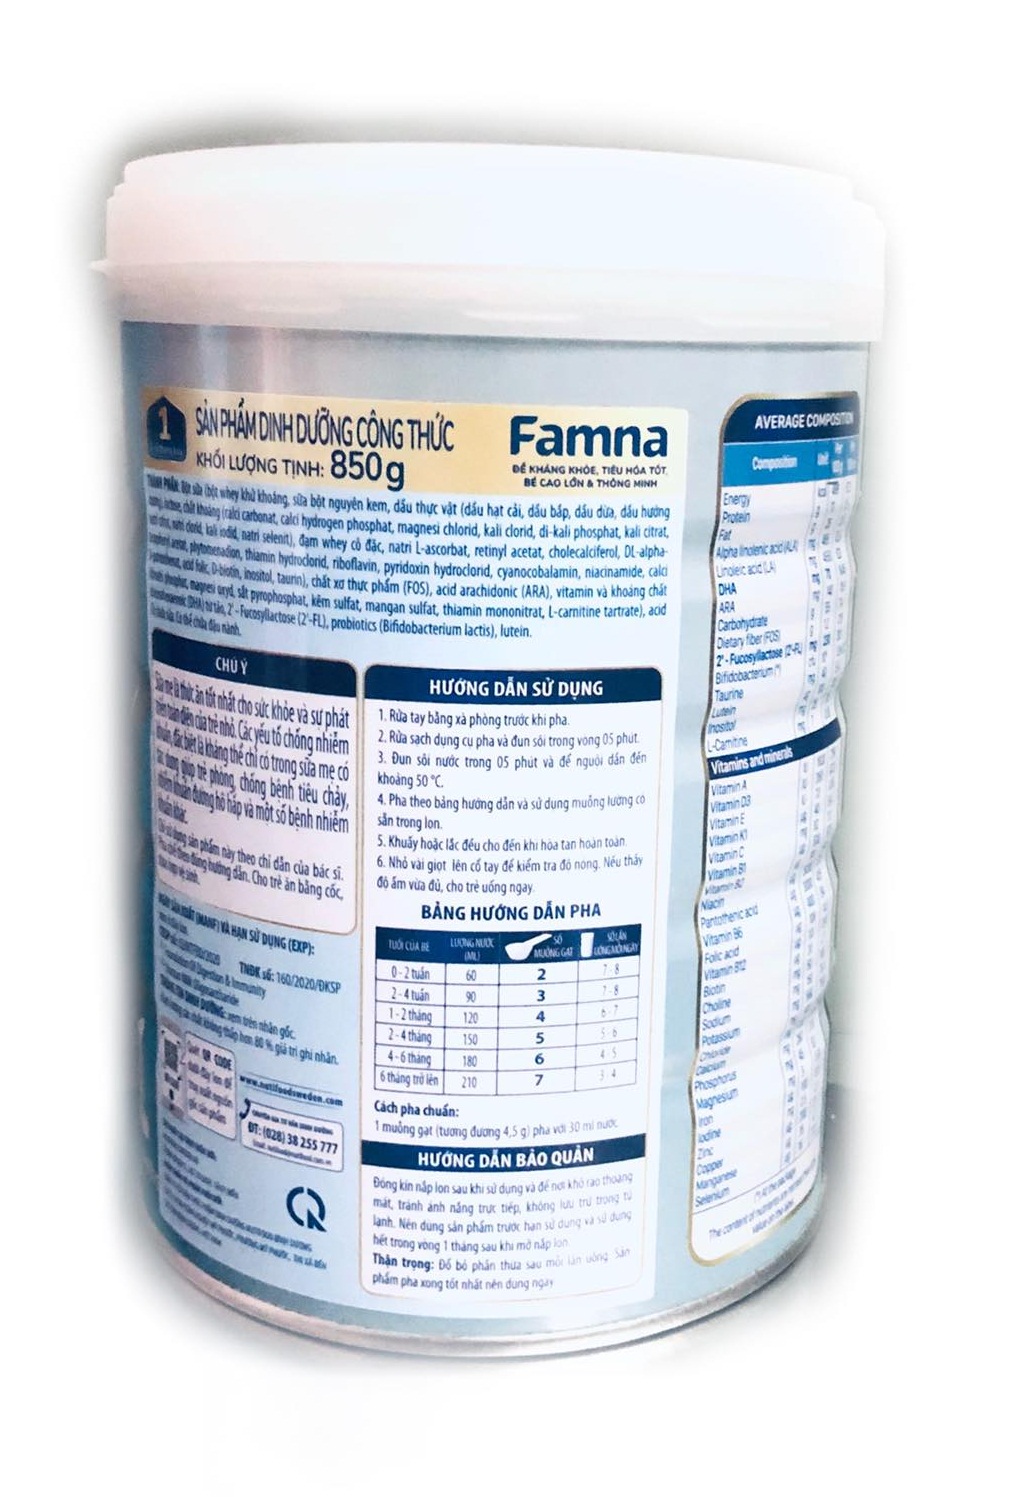 Bộ 3 lon sữa Famna step 1 - Đề kháng khoẻ, tiêu hoá tốt, bé cao lớn và thông minh - Hàng chính hãng của NutiFood